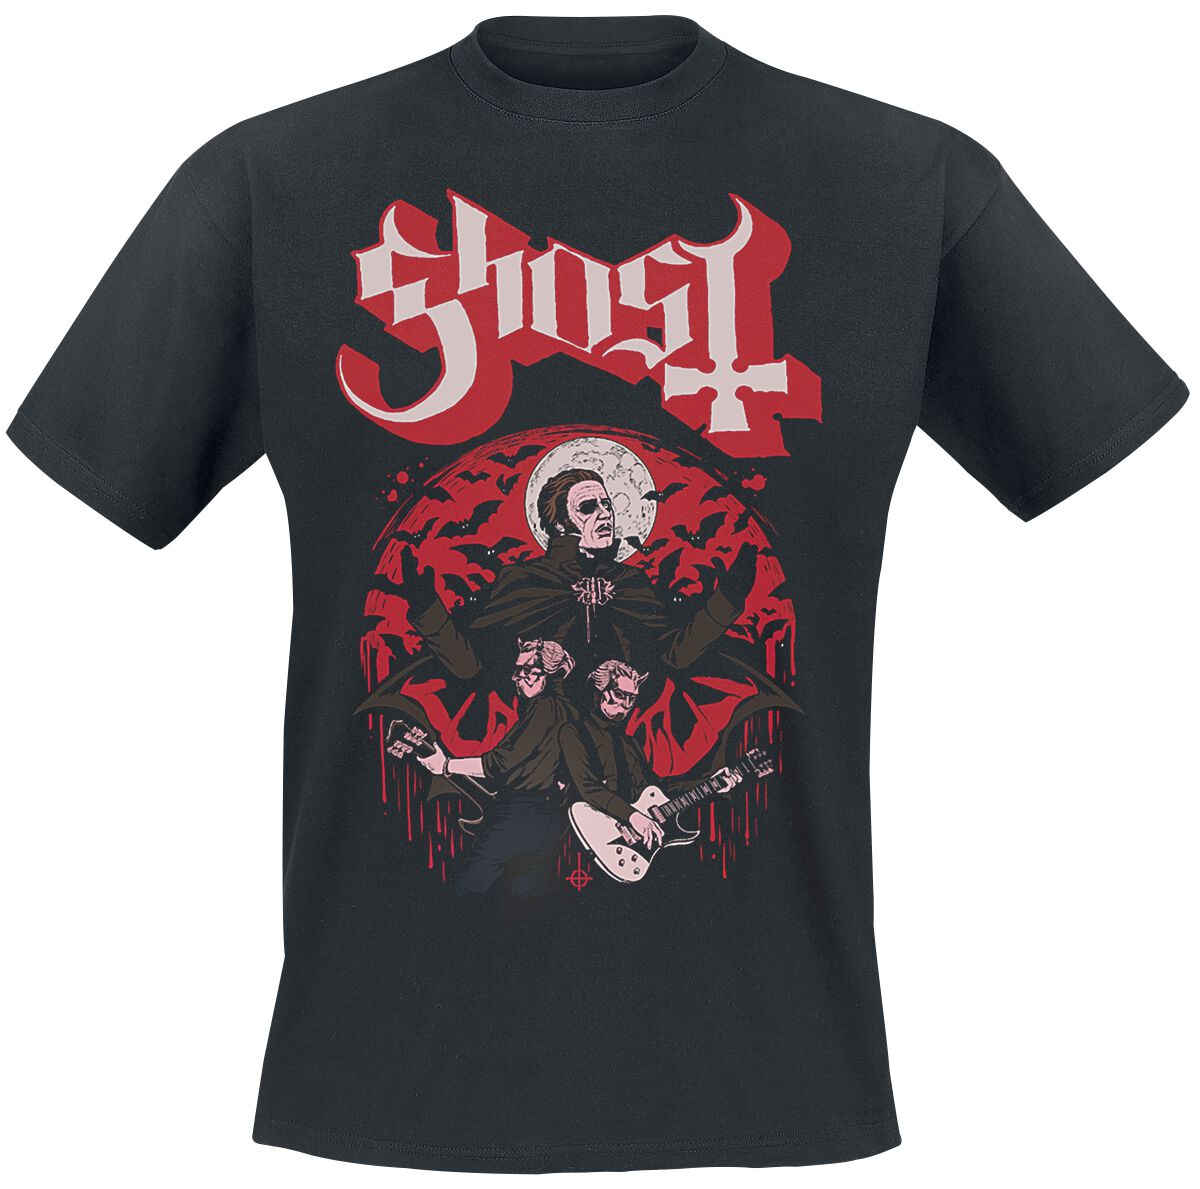 Ghost T-Shirt - Guitars - S bis 5XL - für Männer - Größe S - schwarz  - Lizenziertes Merchandise!